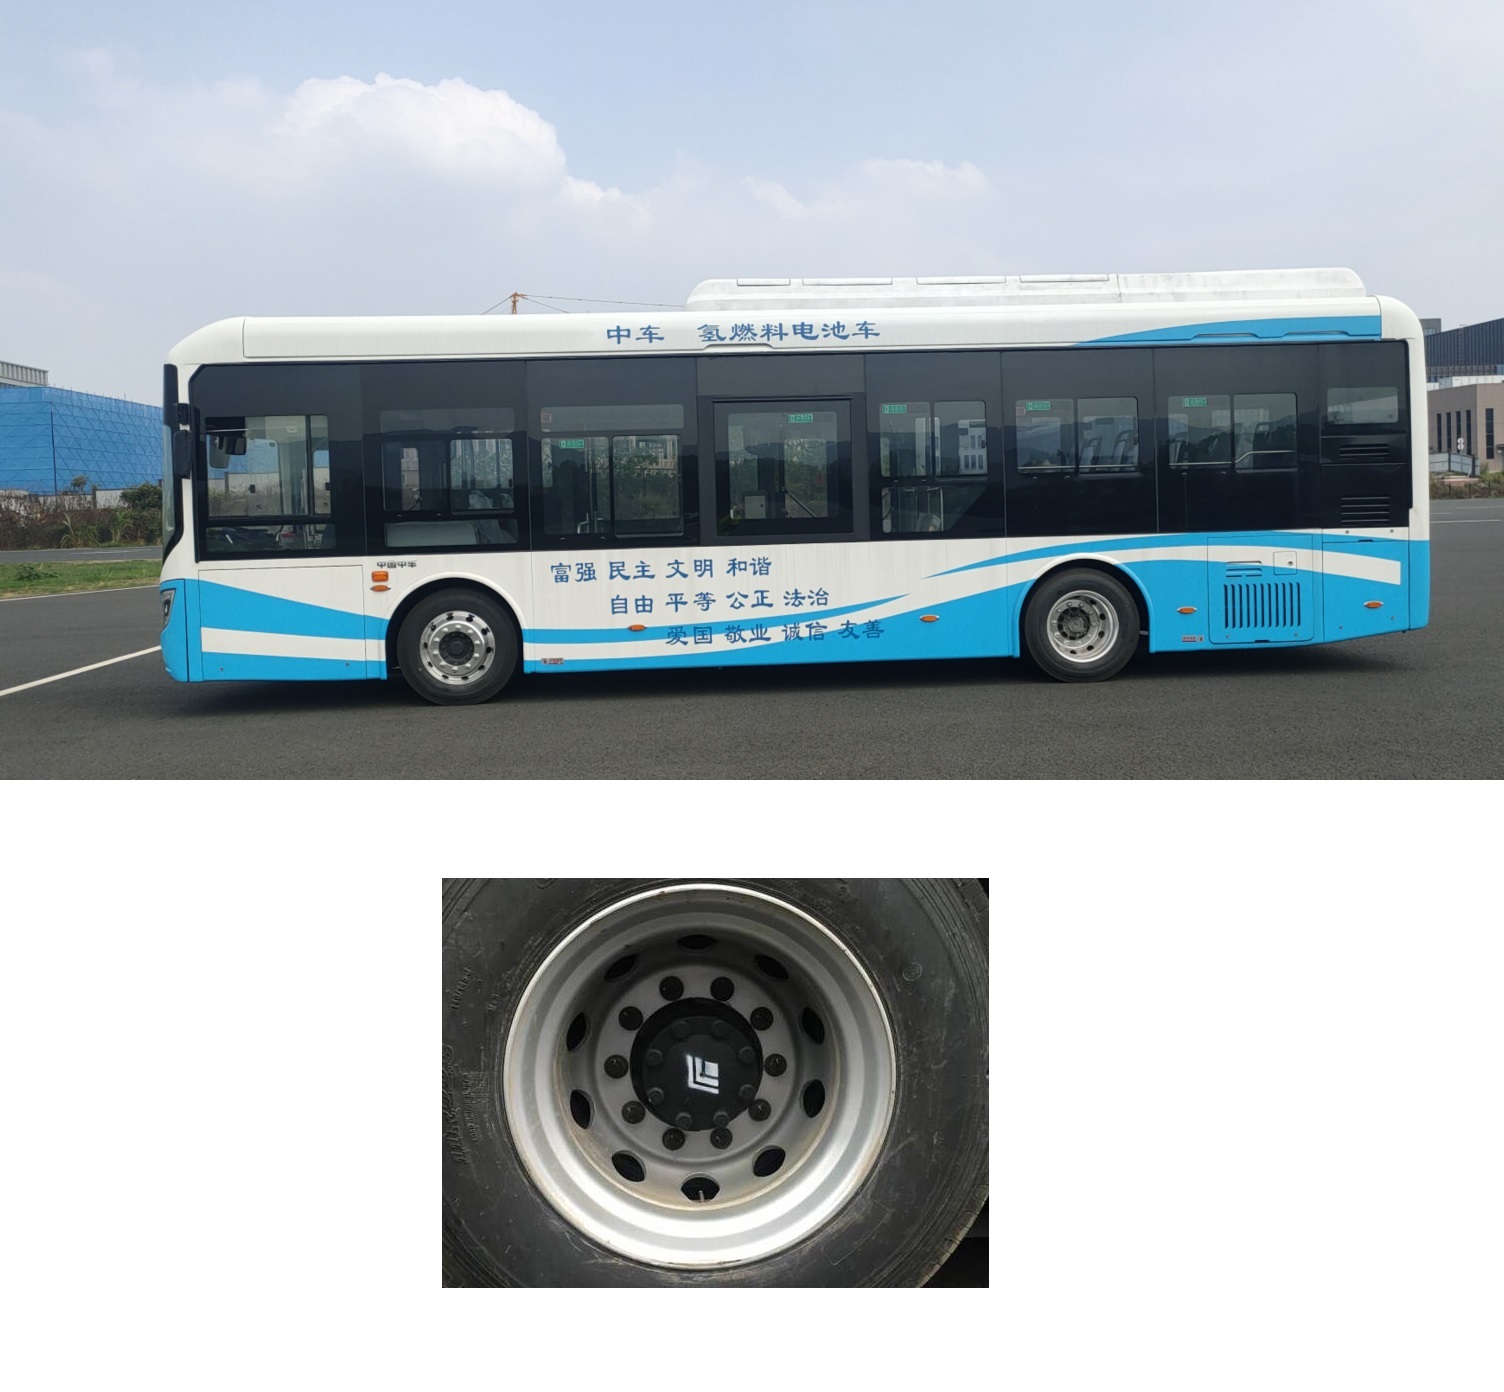 中国中车牌CSR6110GFCEV2燃料电池城市客车公告图片